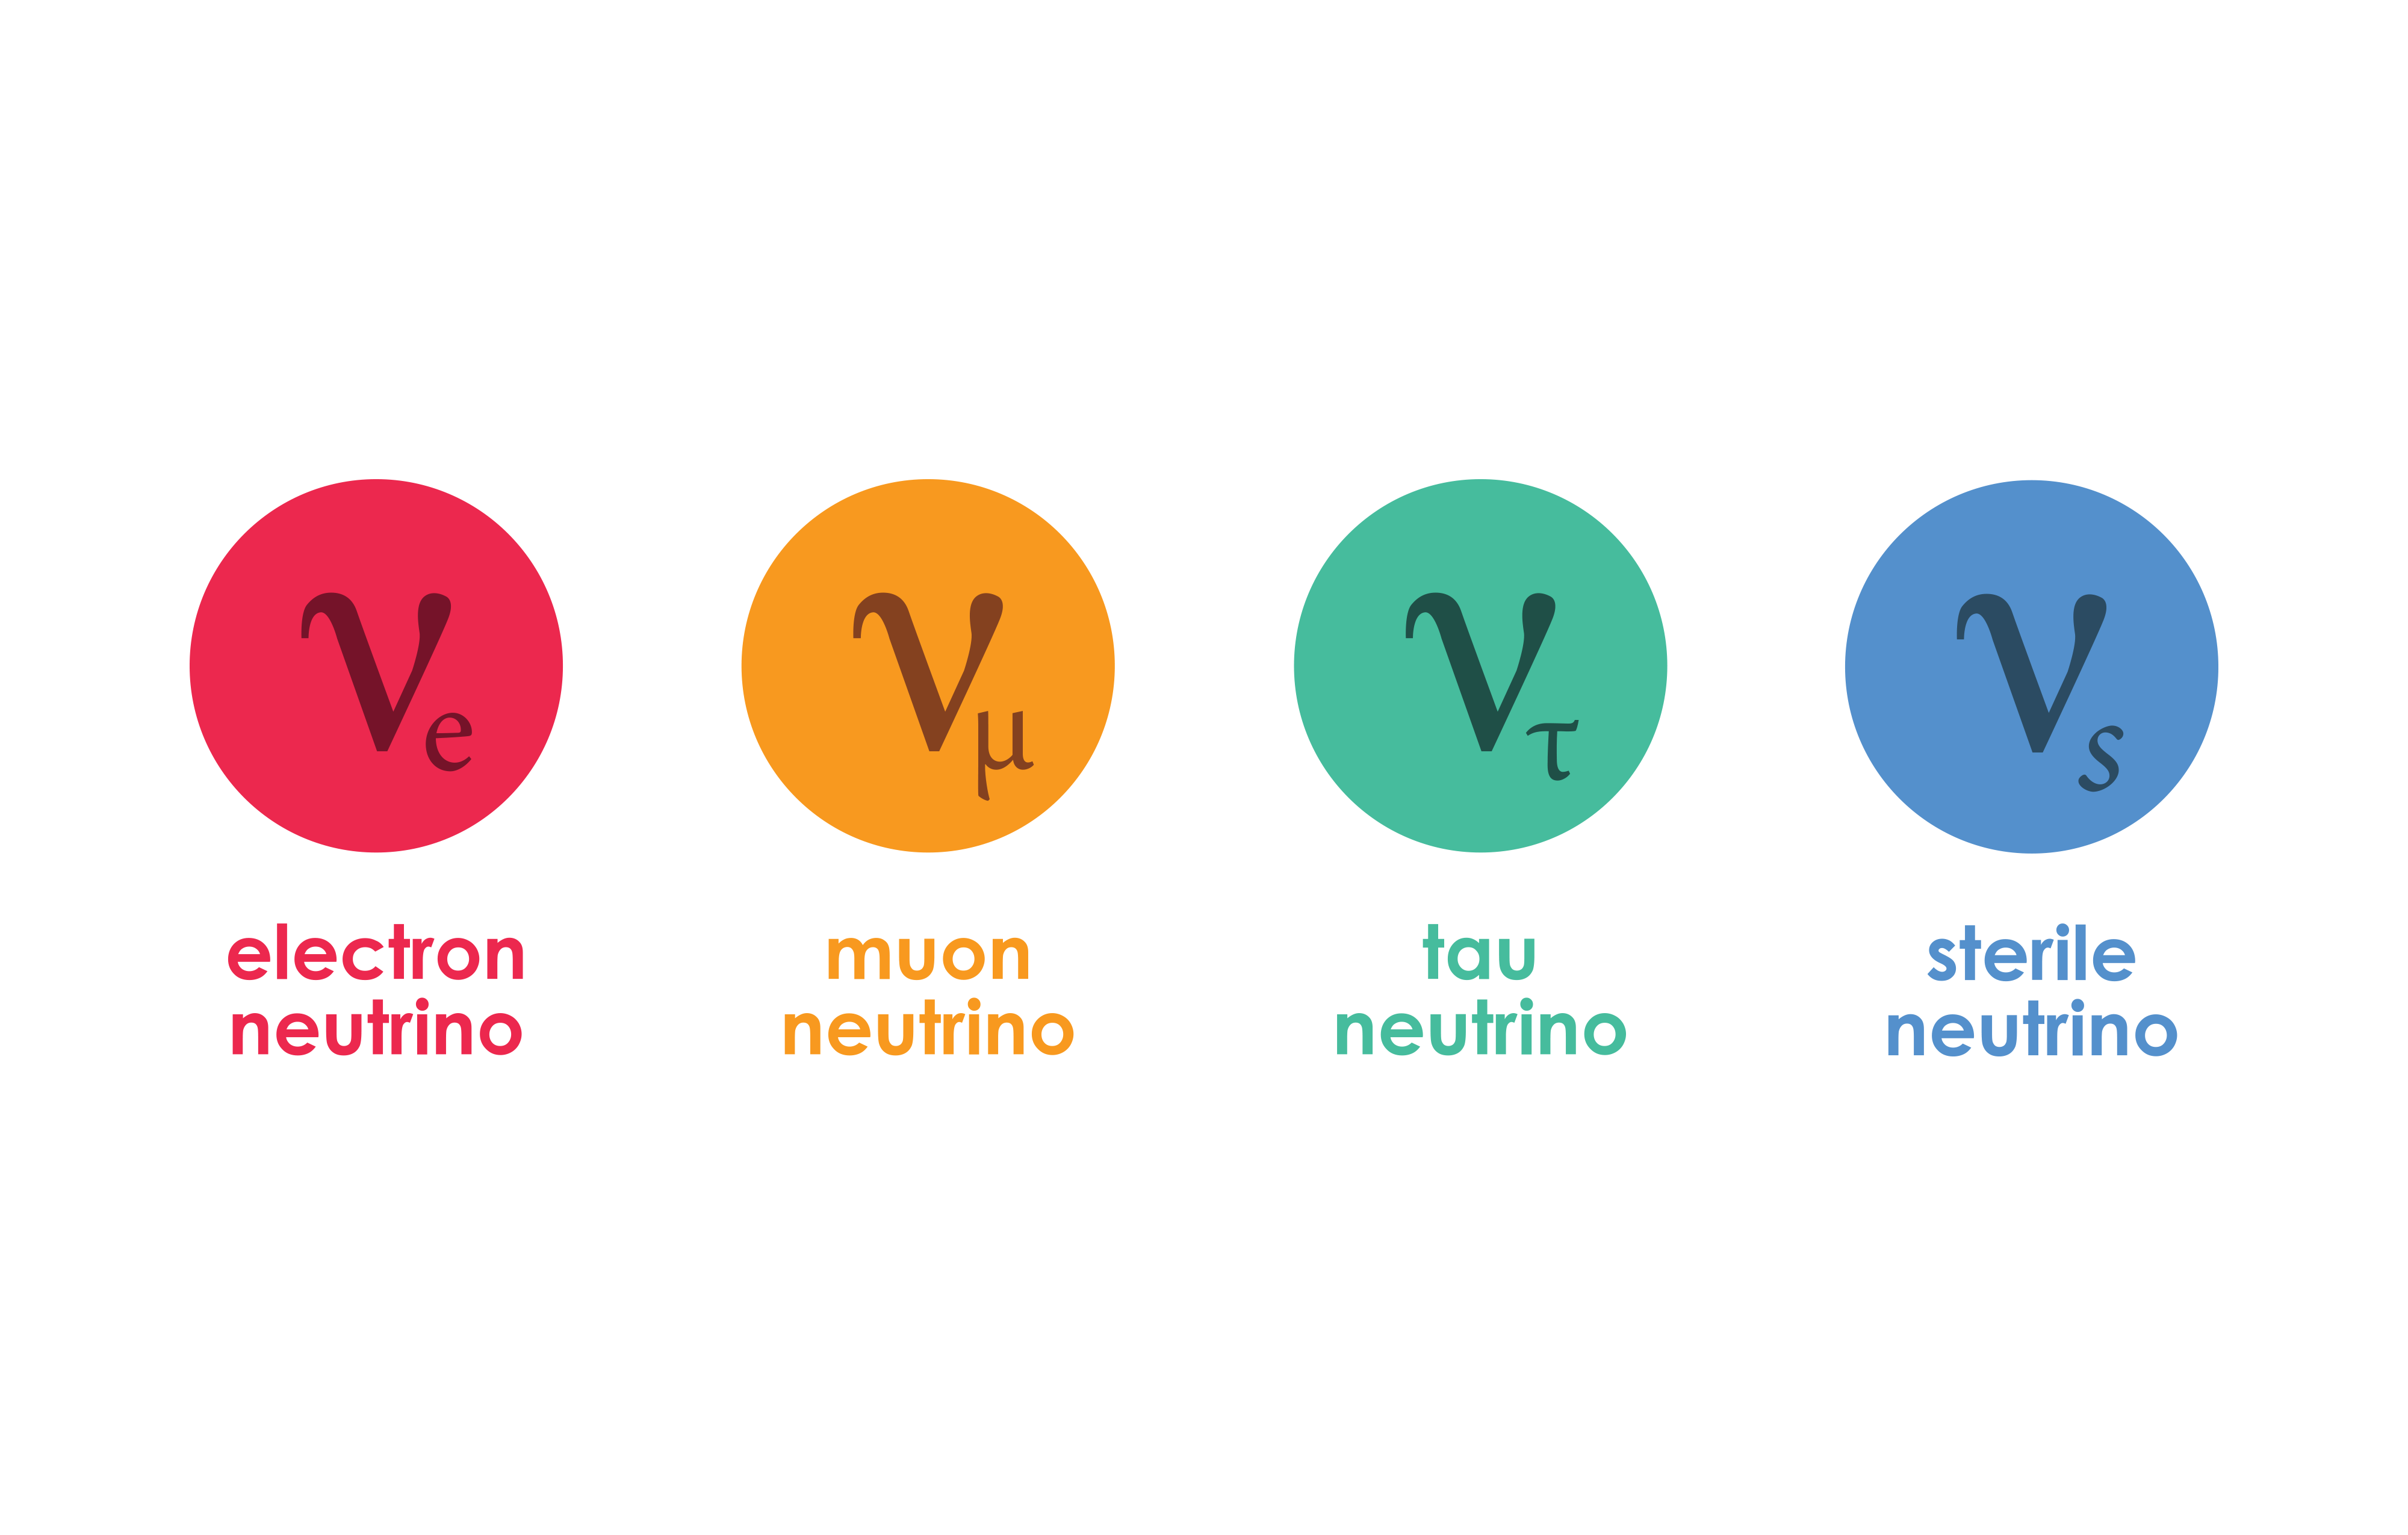 Four types of neutrinos?